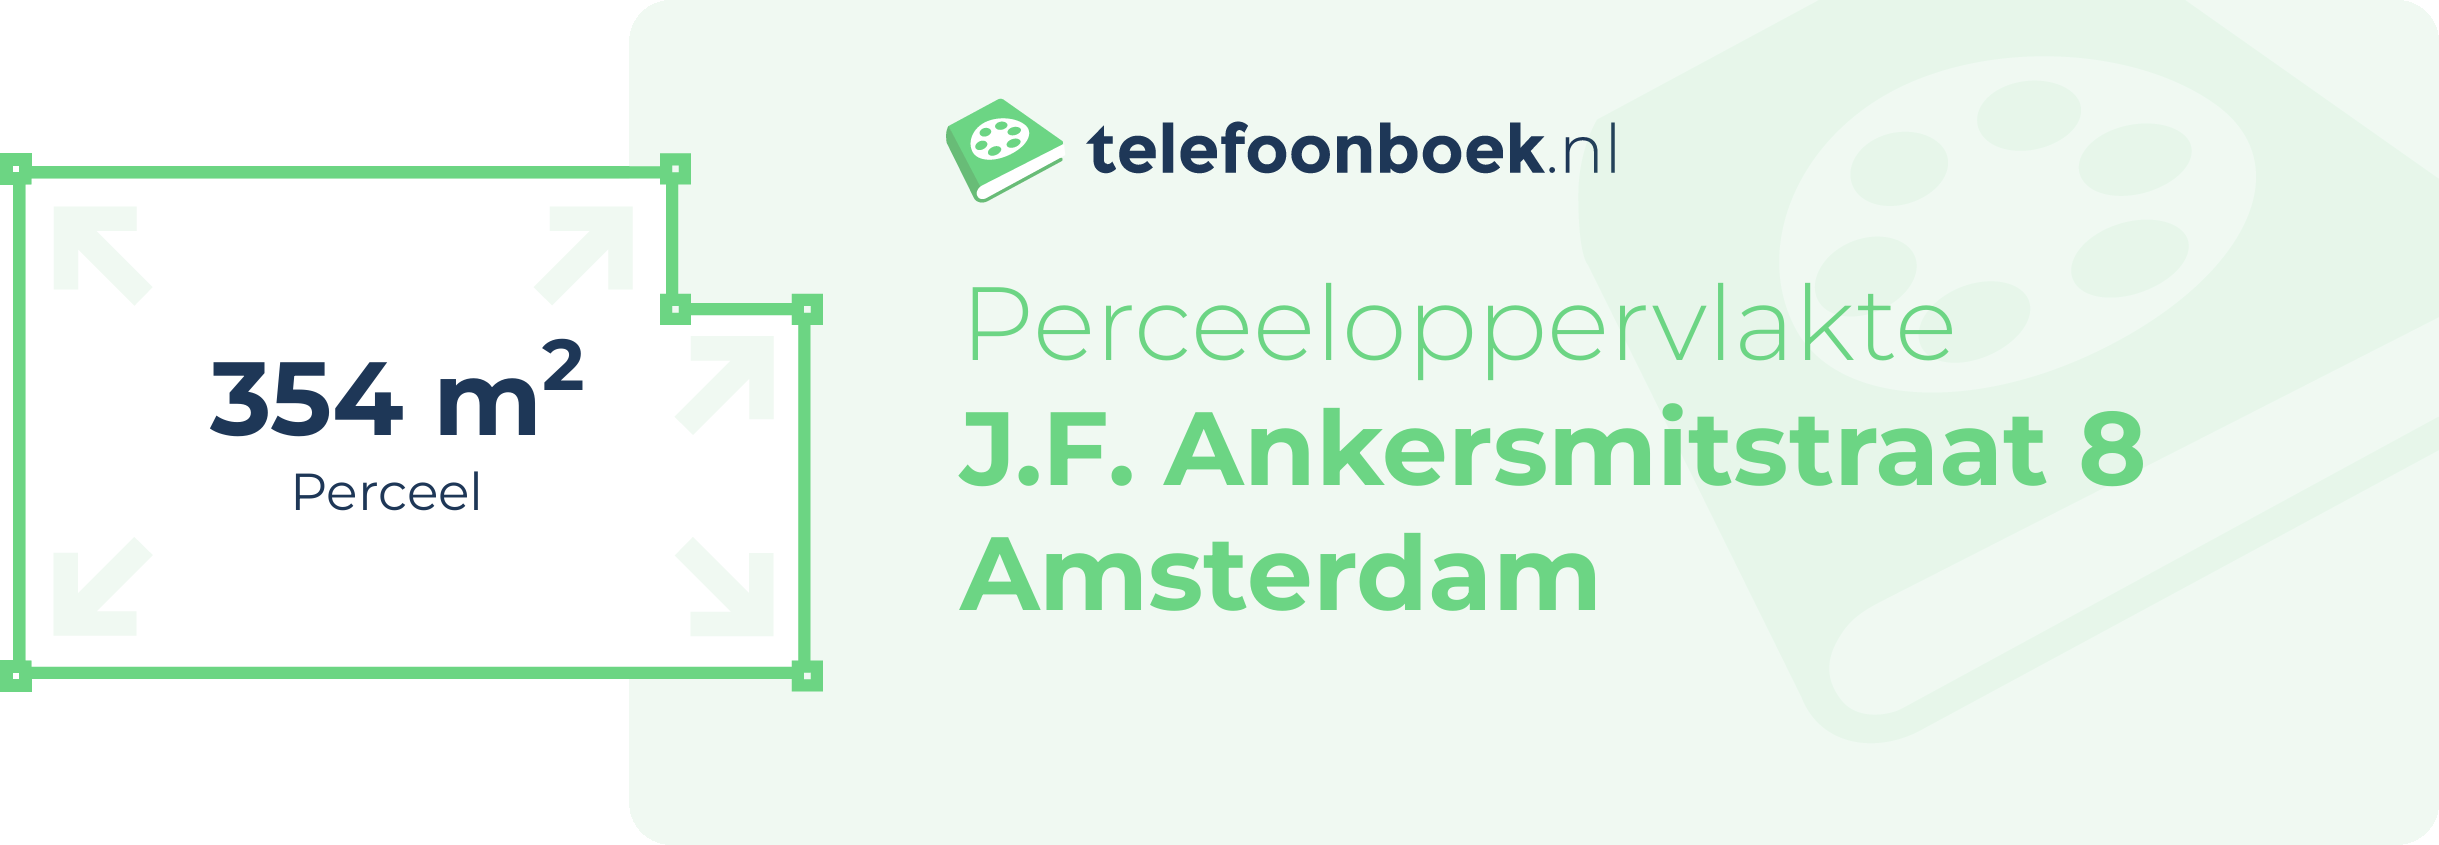 Perceeloppervlakte J.F. Ankersmitstraat 8 Amsterdam